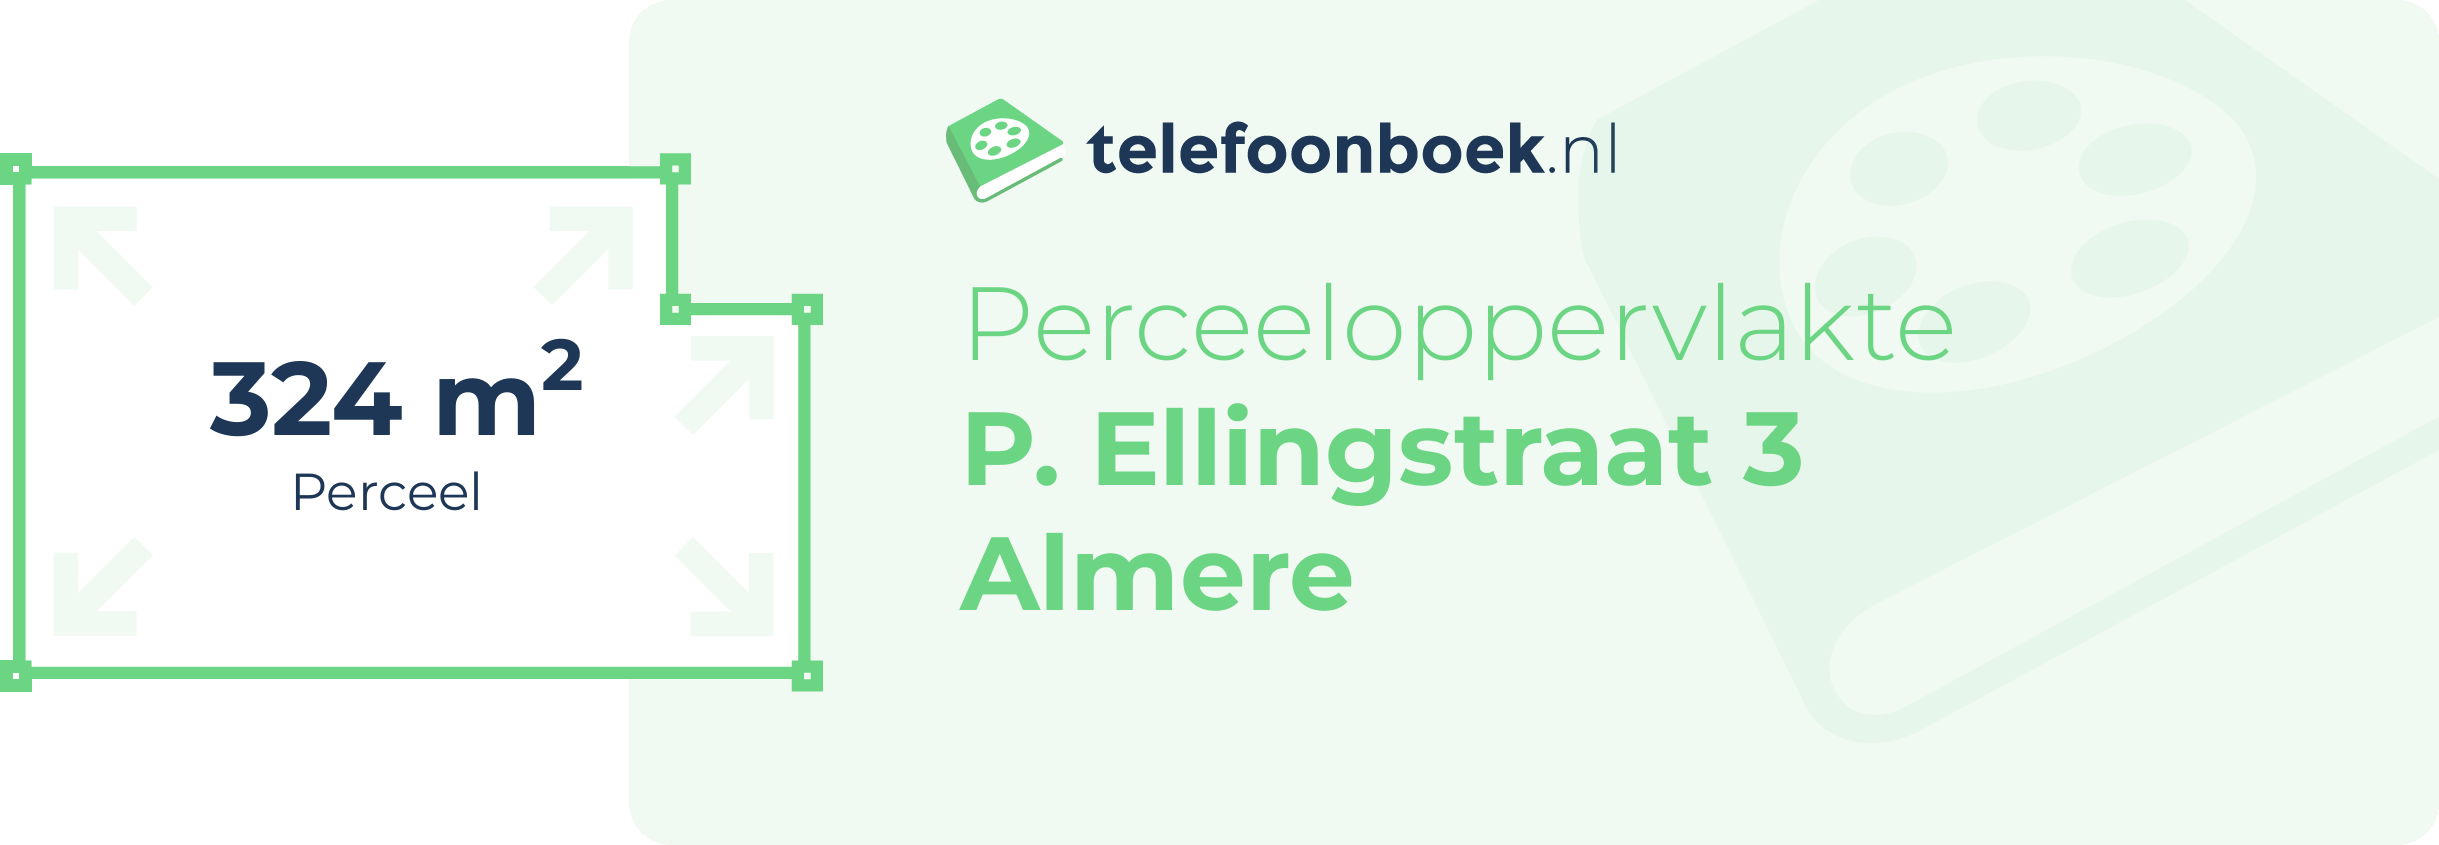 Perceeloppervlakte P. Ellingstraat 3 Almere